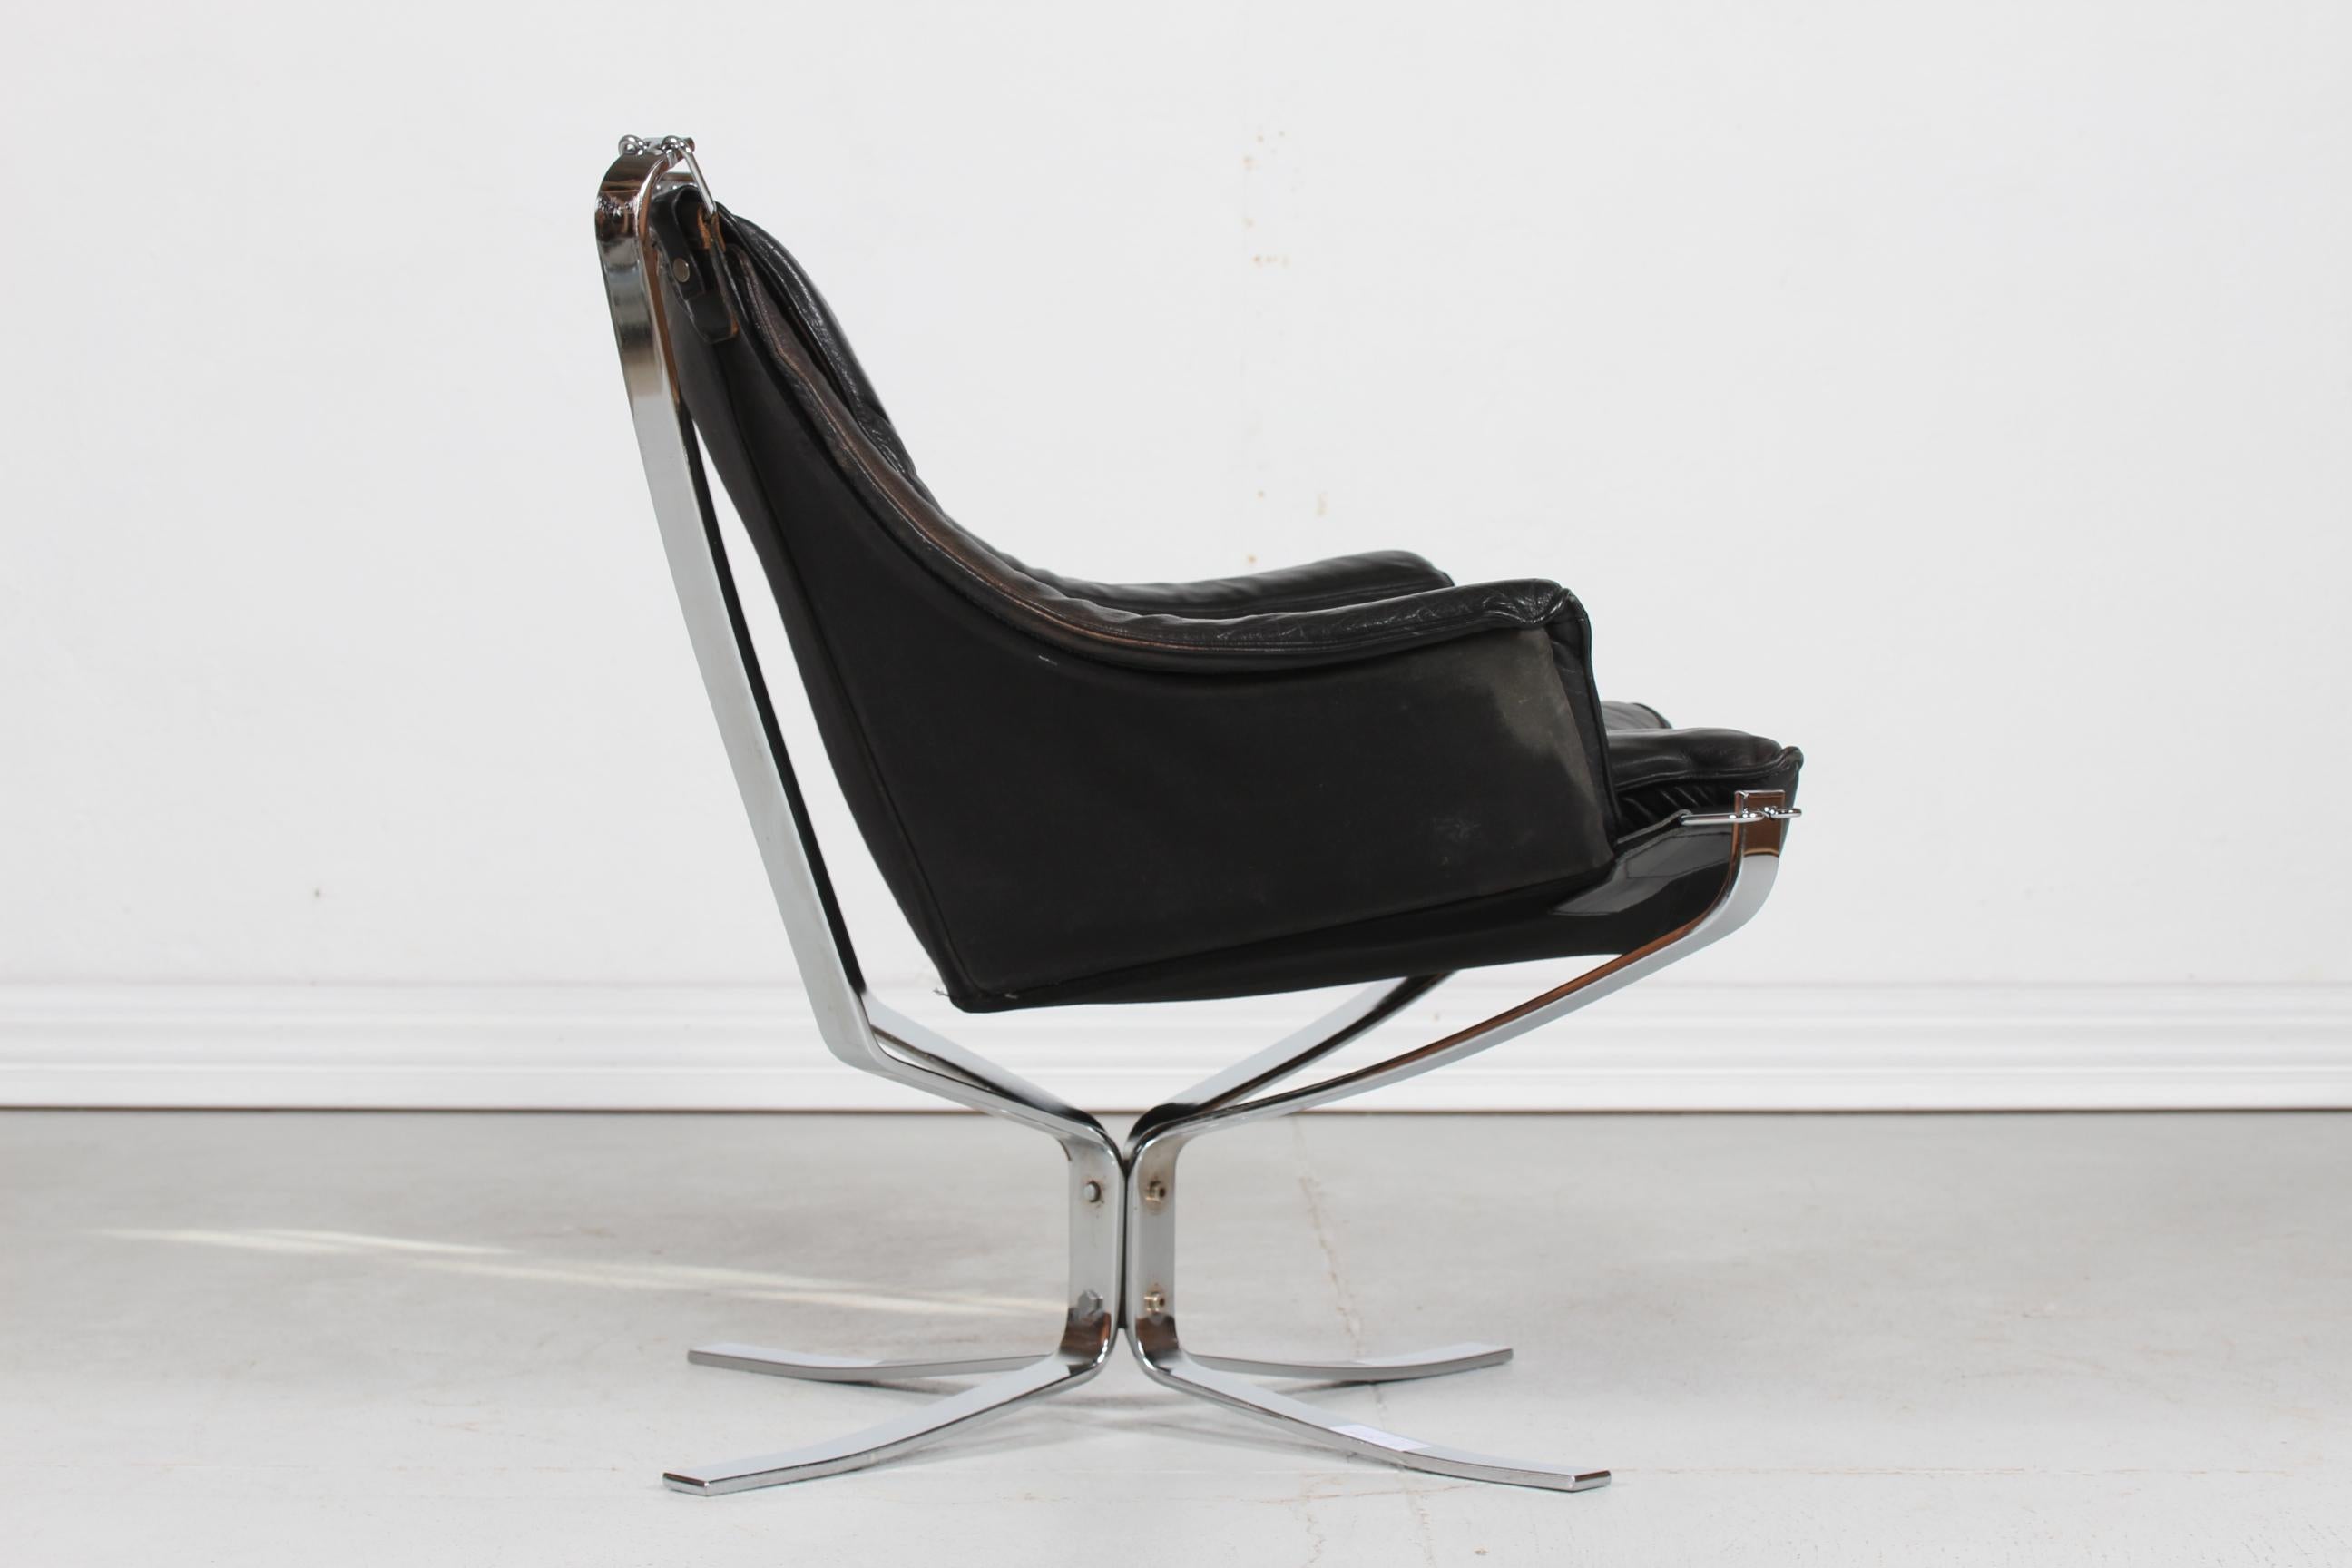 Fin du 20e siècle Sigurd Ressell Falcon Lounge Chair en cuir noir et base chromée 1970 en vente